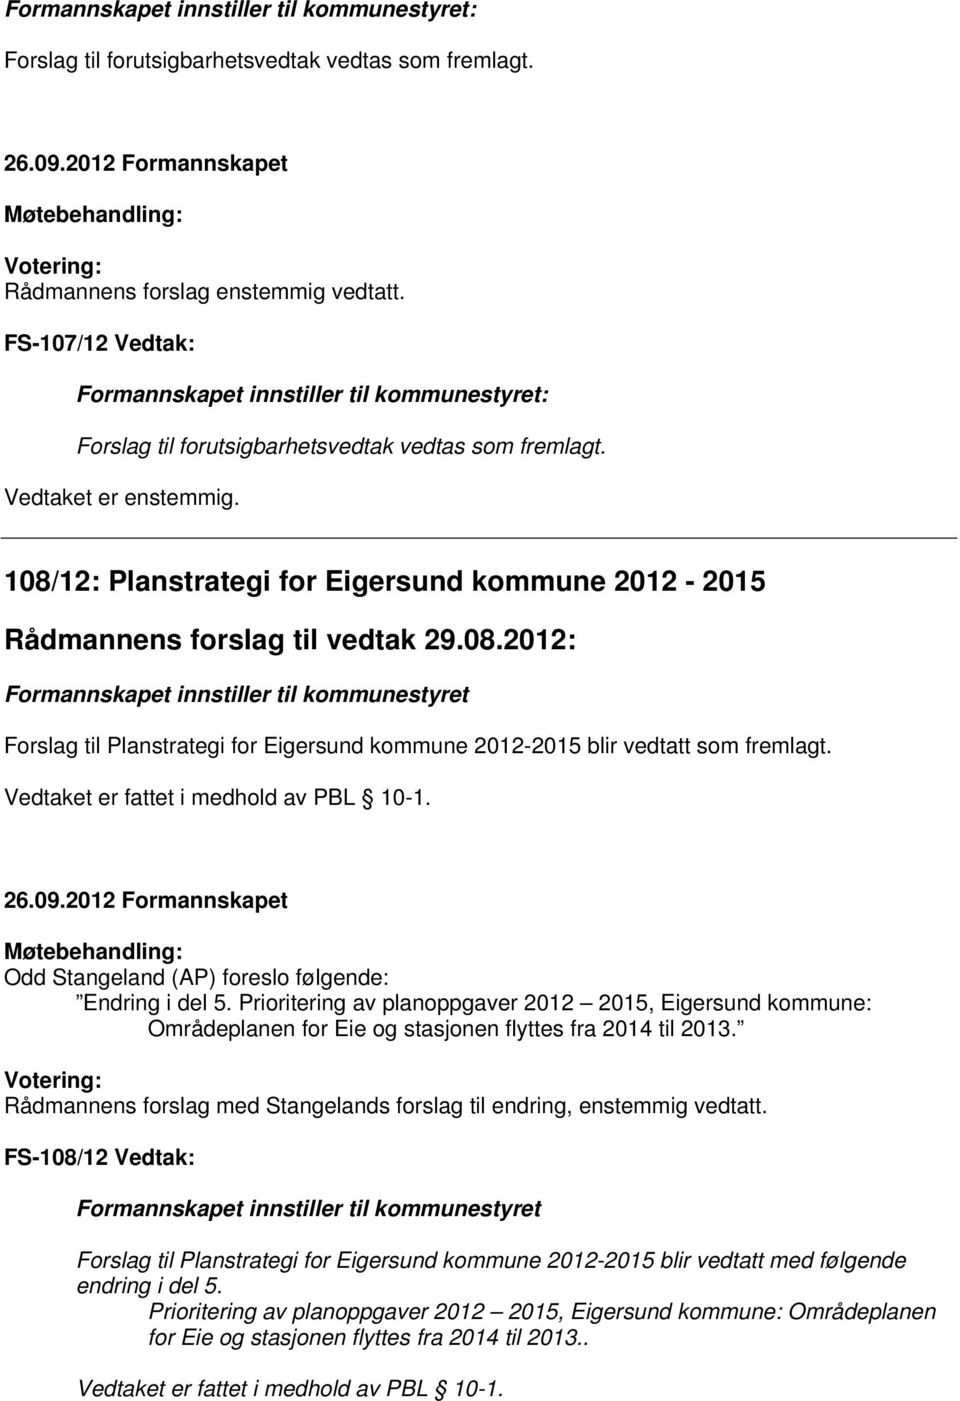 108/12: Planstrategi for Eigersund kommune 2012-2015 Rådmannens forslag til vedtak 29.08.2012: Formannskapet innstiller til kommunestyret Forslag til Planstrategi for Eigersund kommune 2012-2015 blir vedtatt som fremlagt.